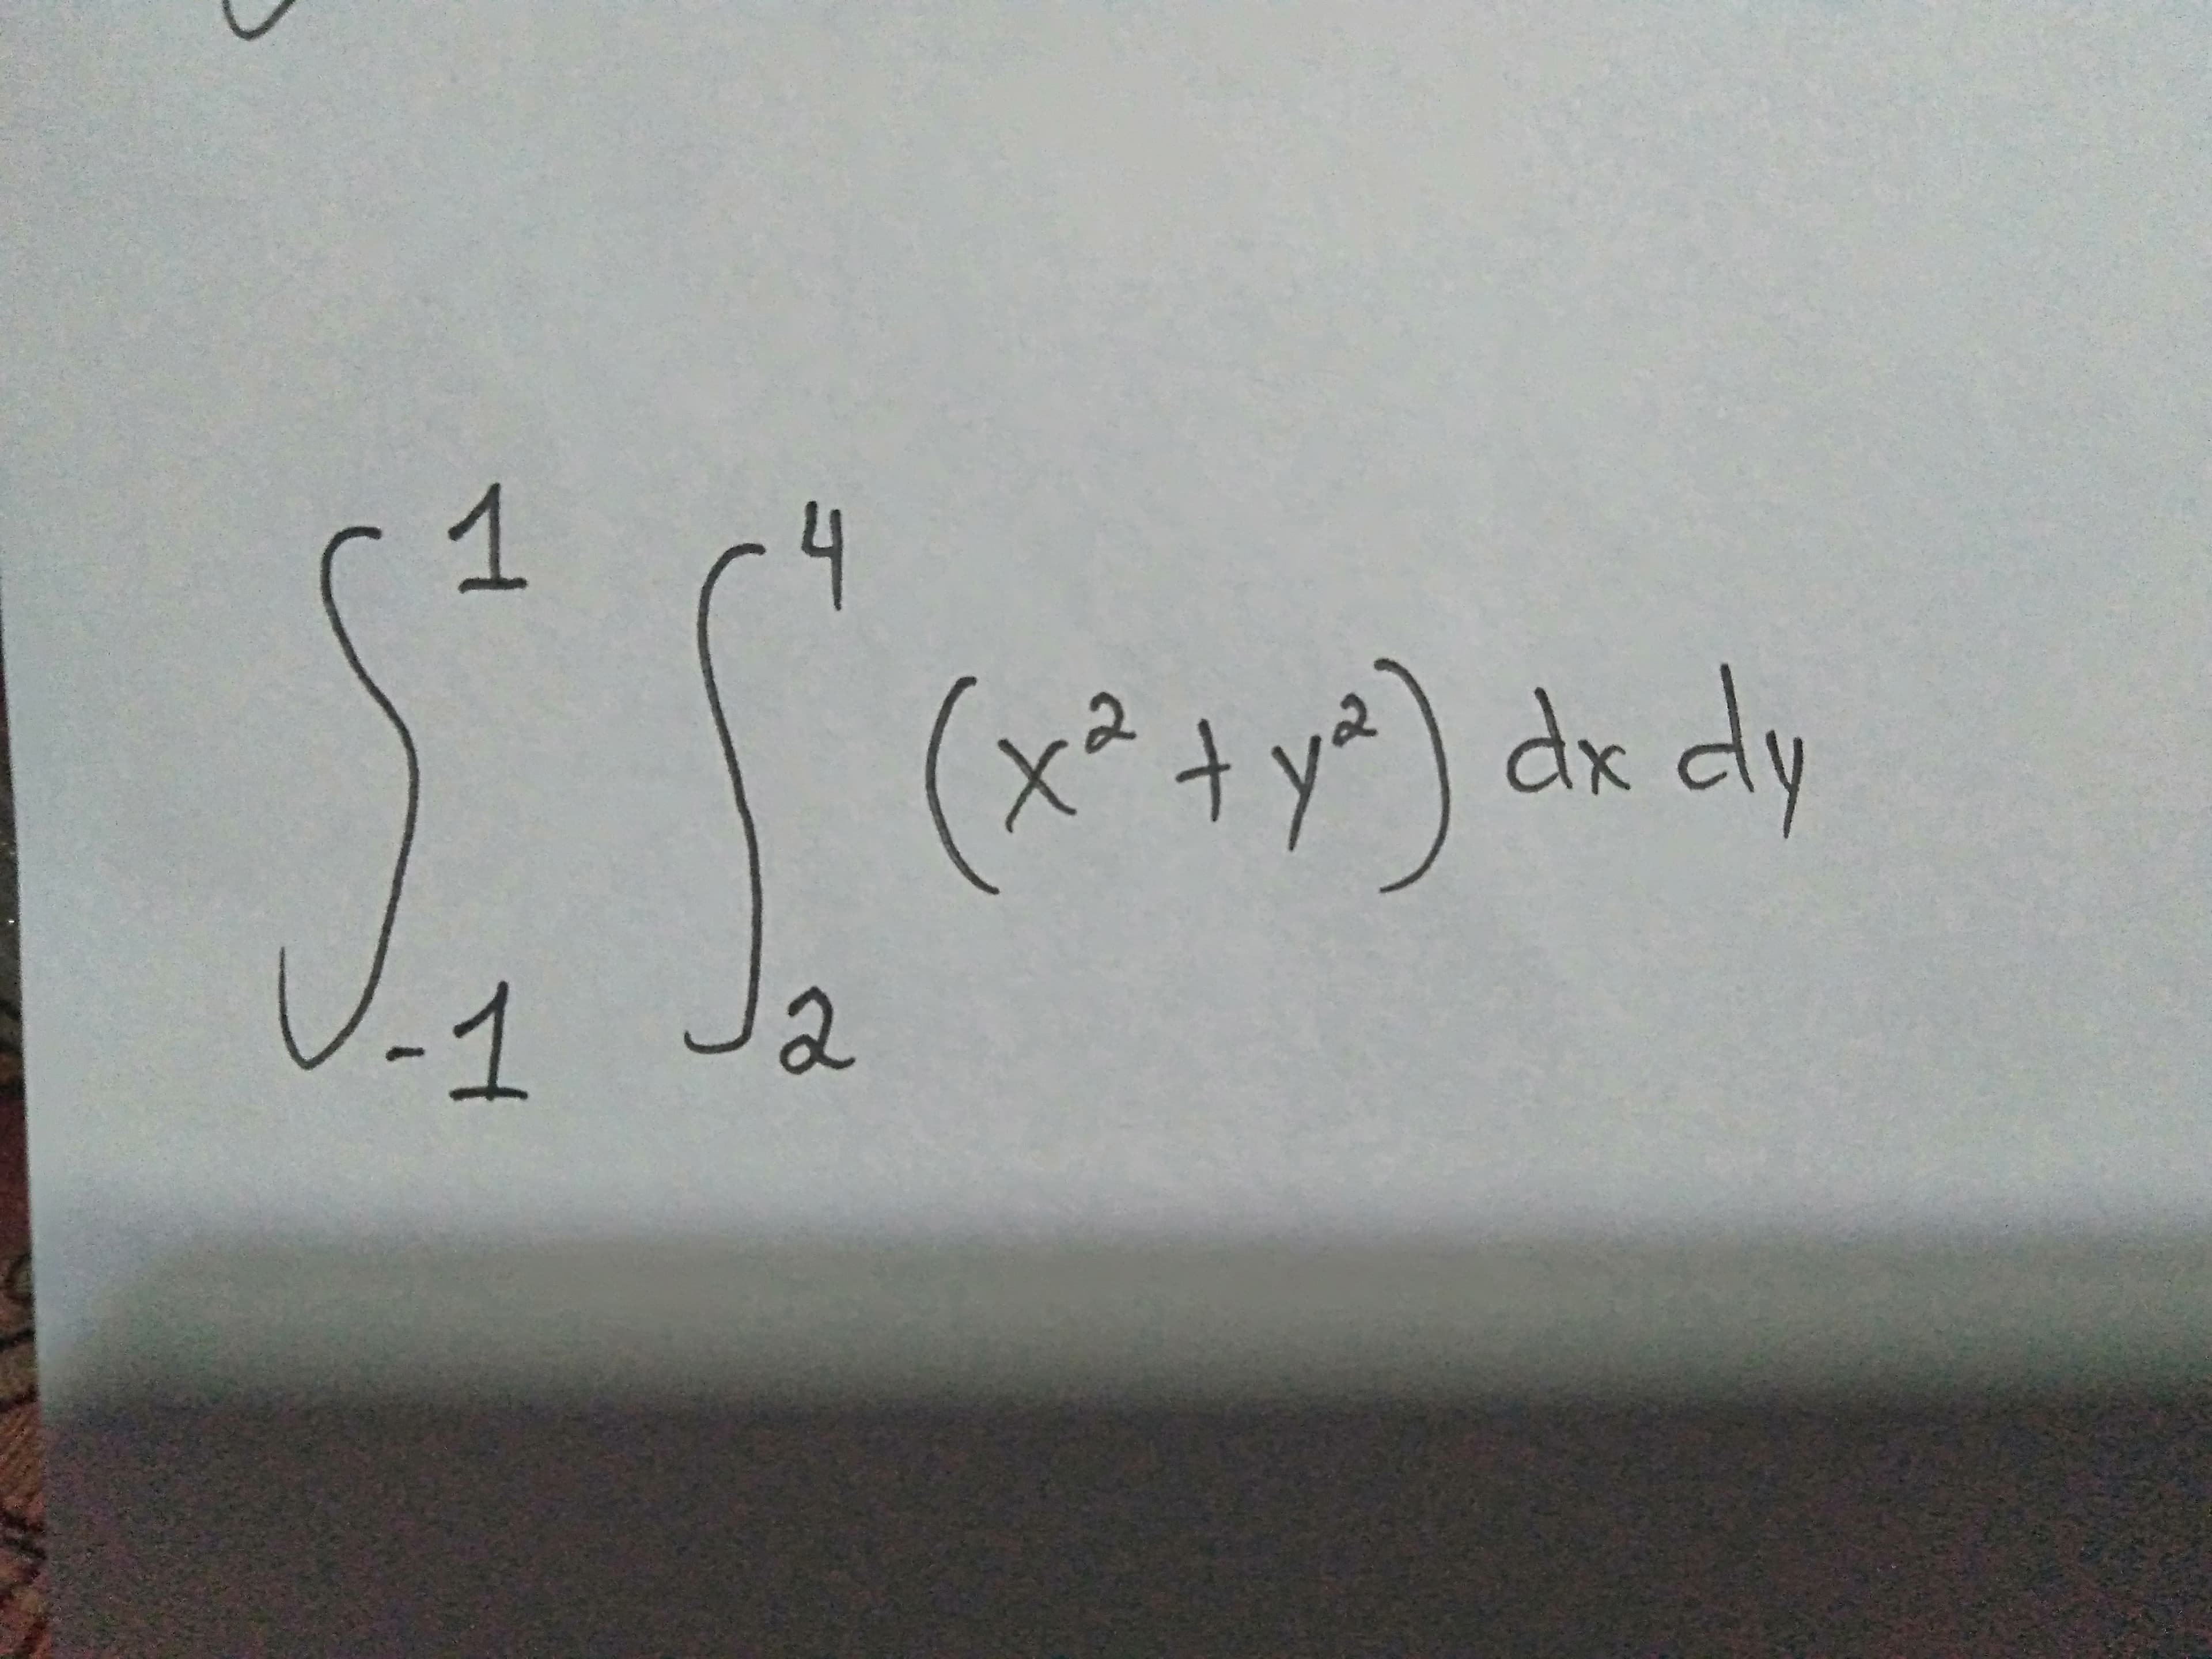 1
(x²+y*) dx dly
-1
2
